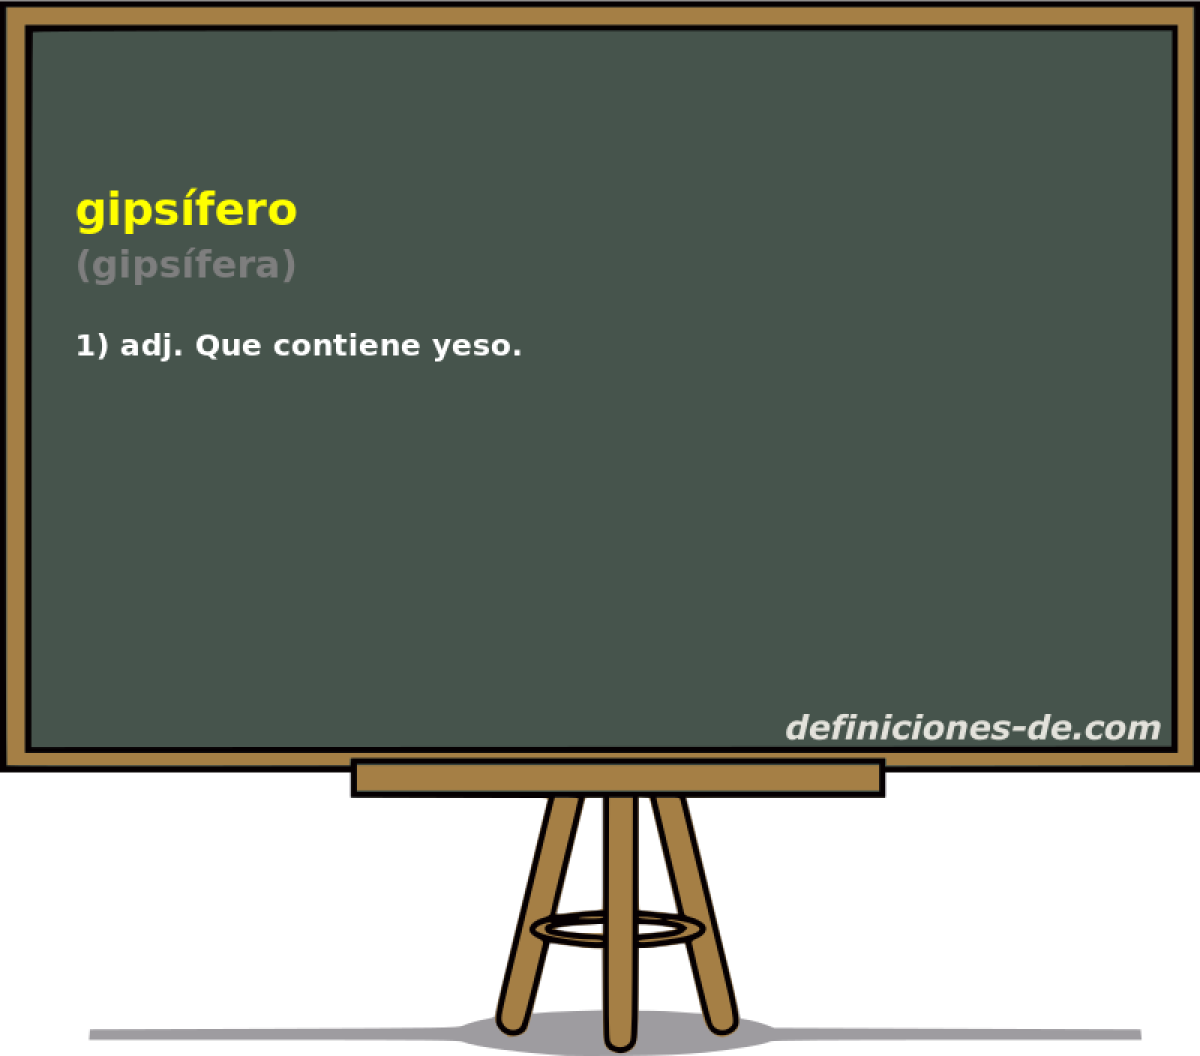 gipsfero (gipsfera)